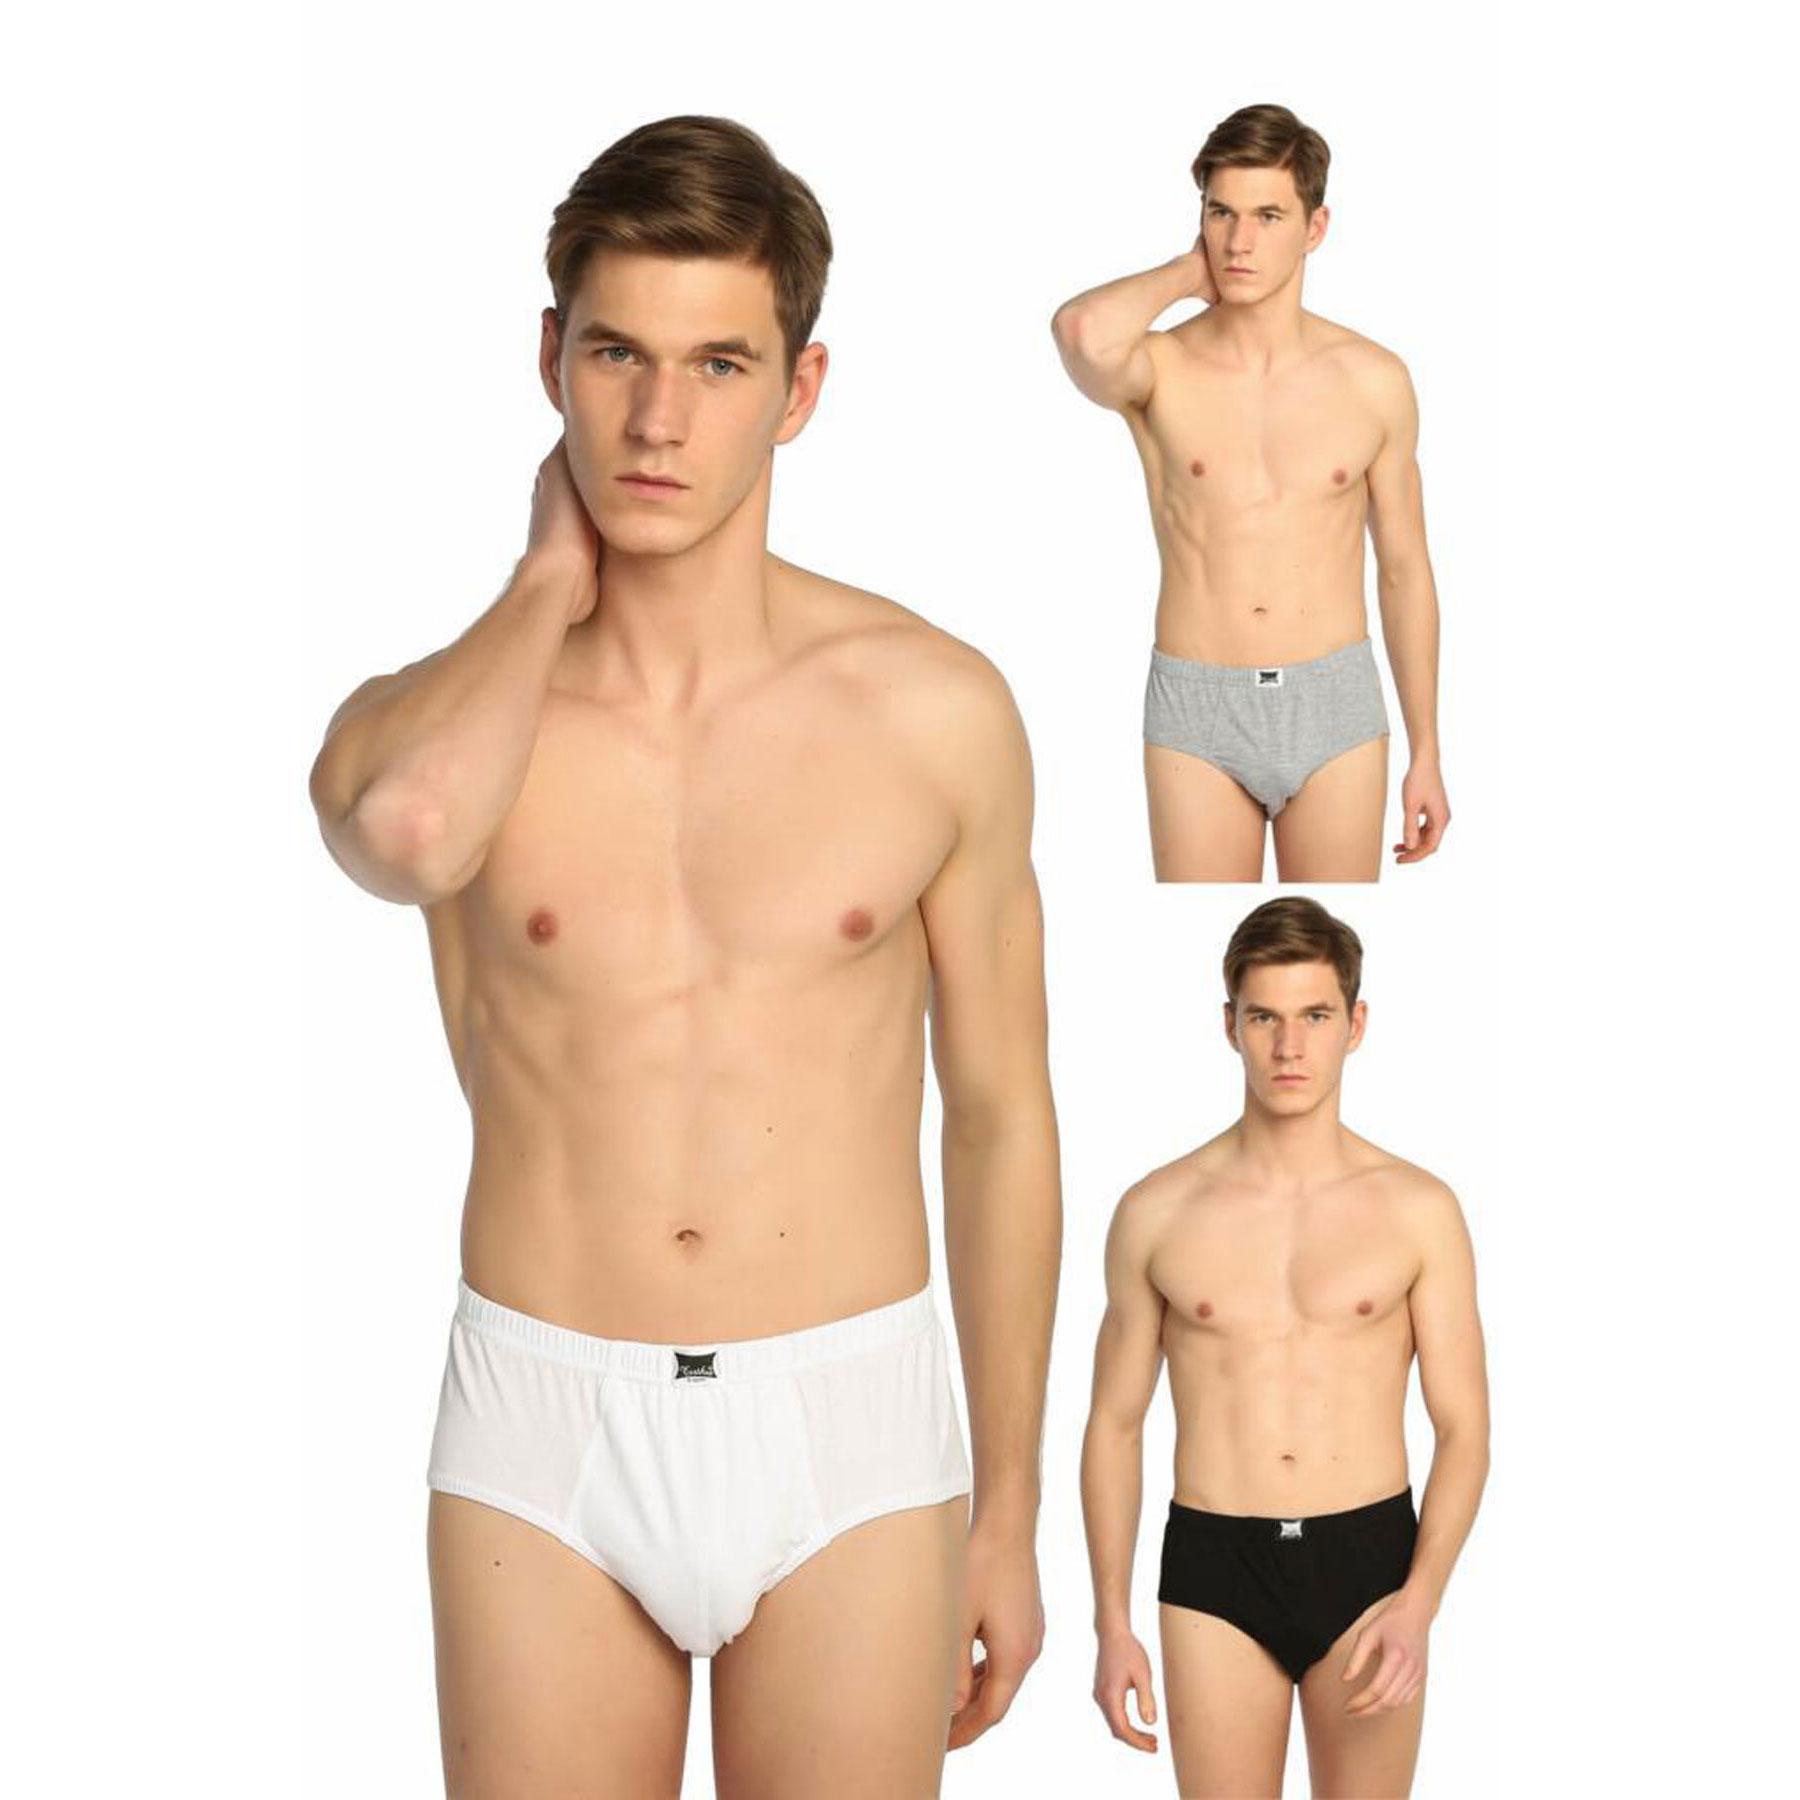 Hepsine Rakip Tutku Underwear Cotton Men's Colored Slip Briefs 6 Pack